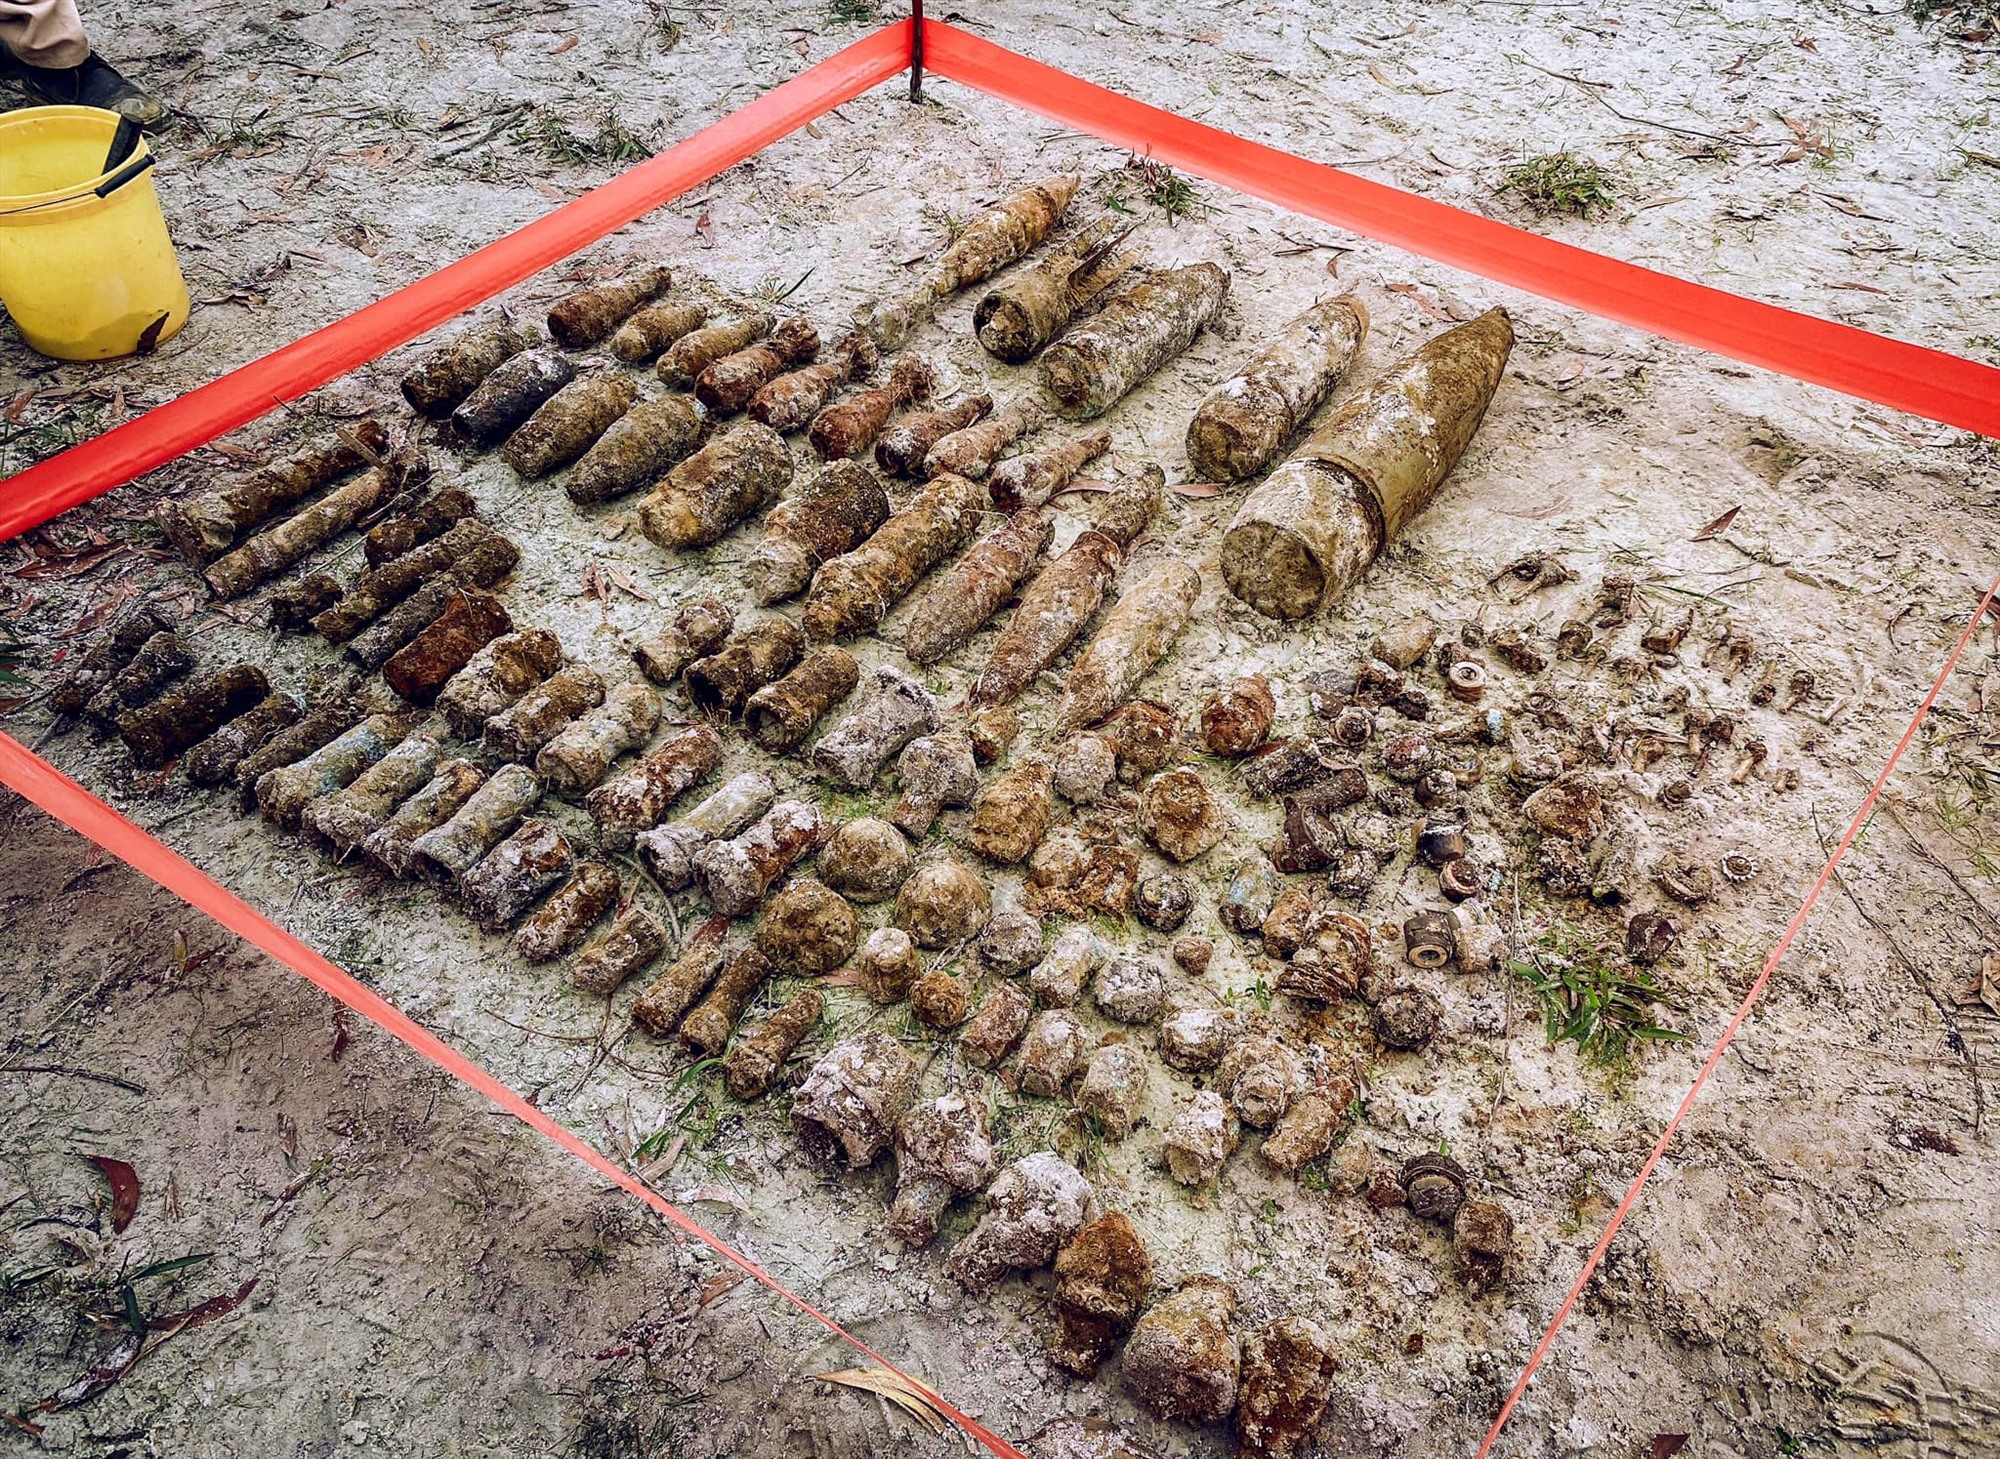 Số vật liệu nổ được tìm phát hiện tại thôn Linh An, xã Triệu Trạch - Ảnh: Dự án MAG cung cấp